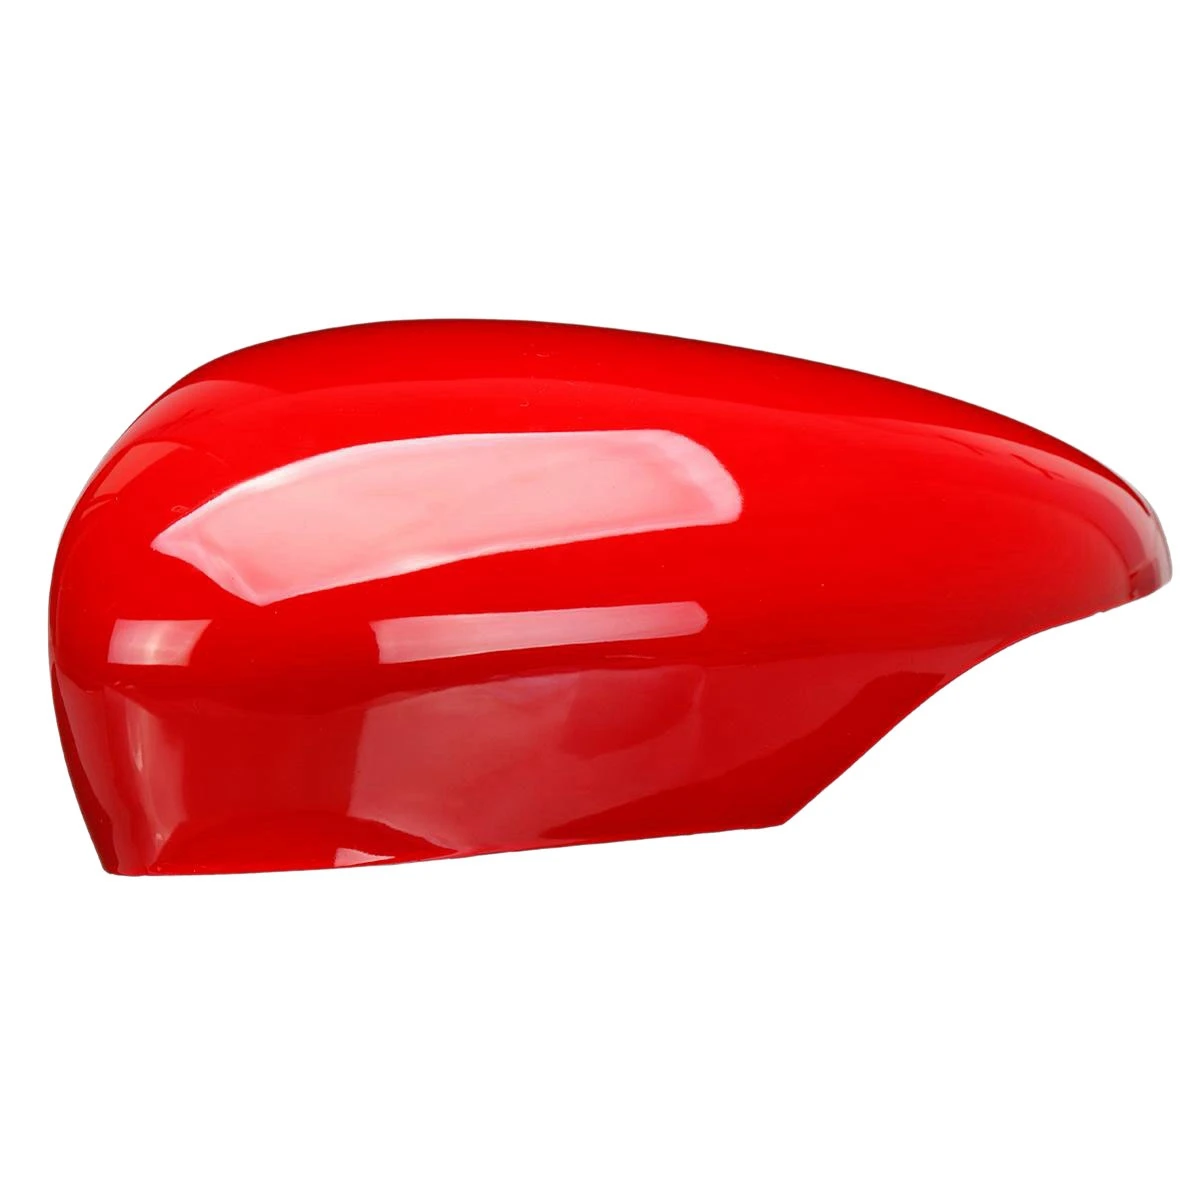 

Крышка для зеркала заднего вида с левым крылом, крышка для зеркала заднего вида для Fiesta MK7 2008-2017, красная